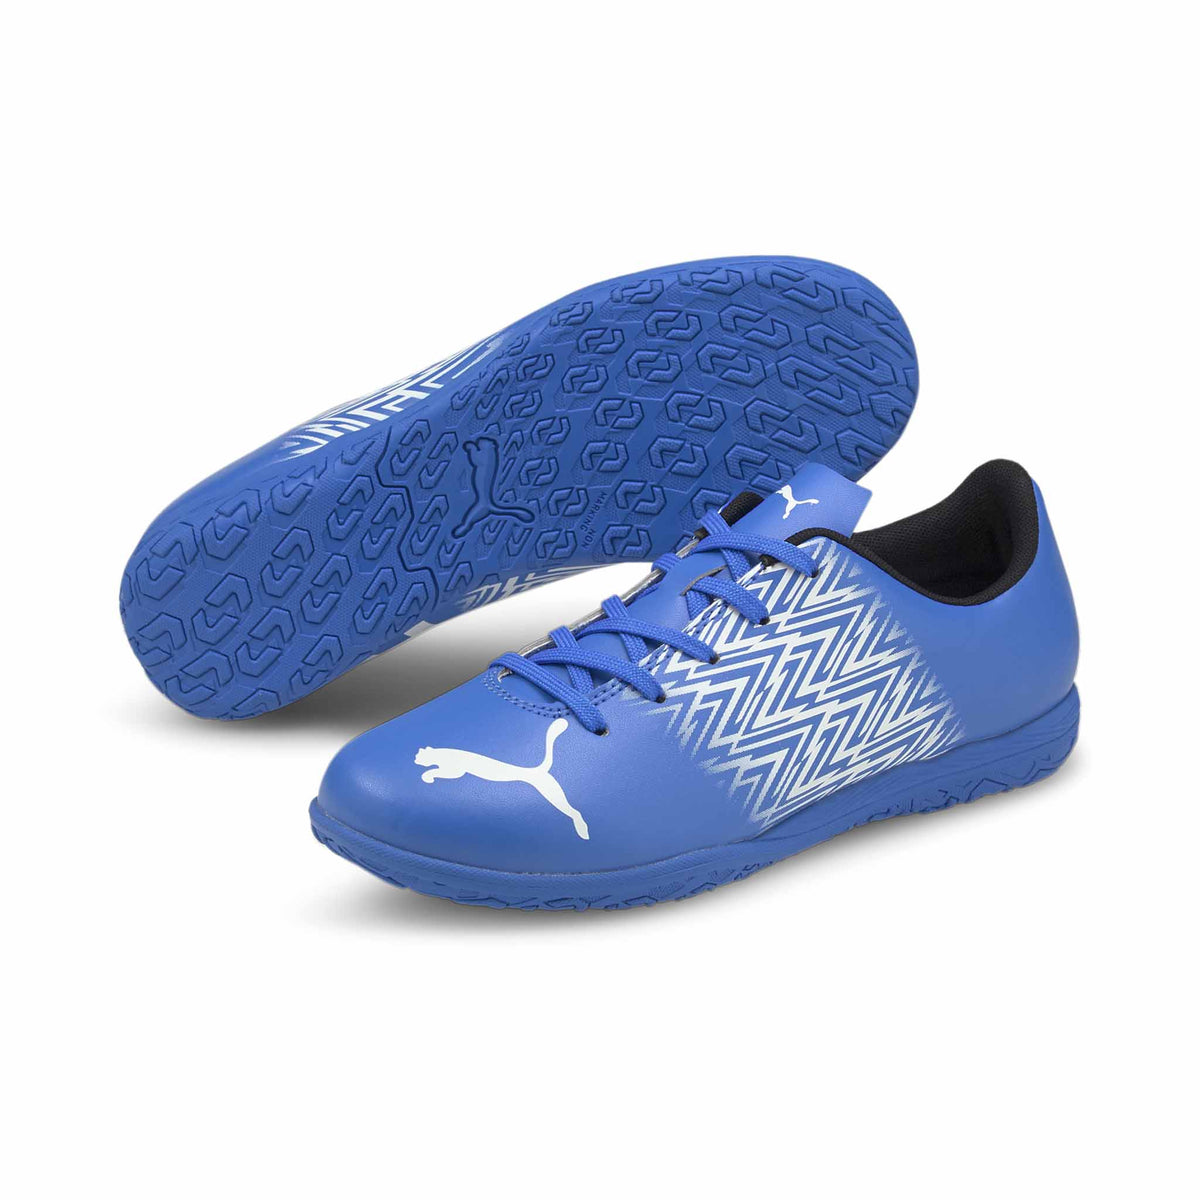 Puma Tacto IT Junior chaussure de soccer intérieur enfant- Bleu/Blanc - Paire